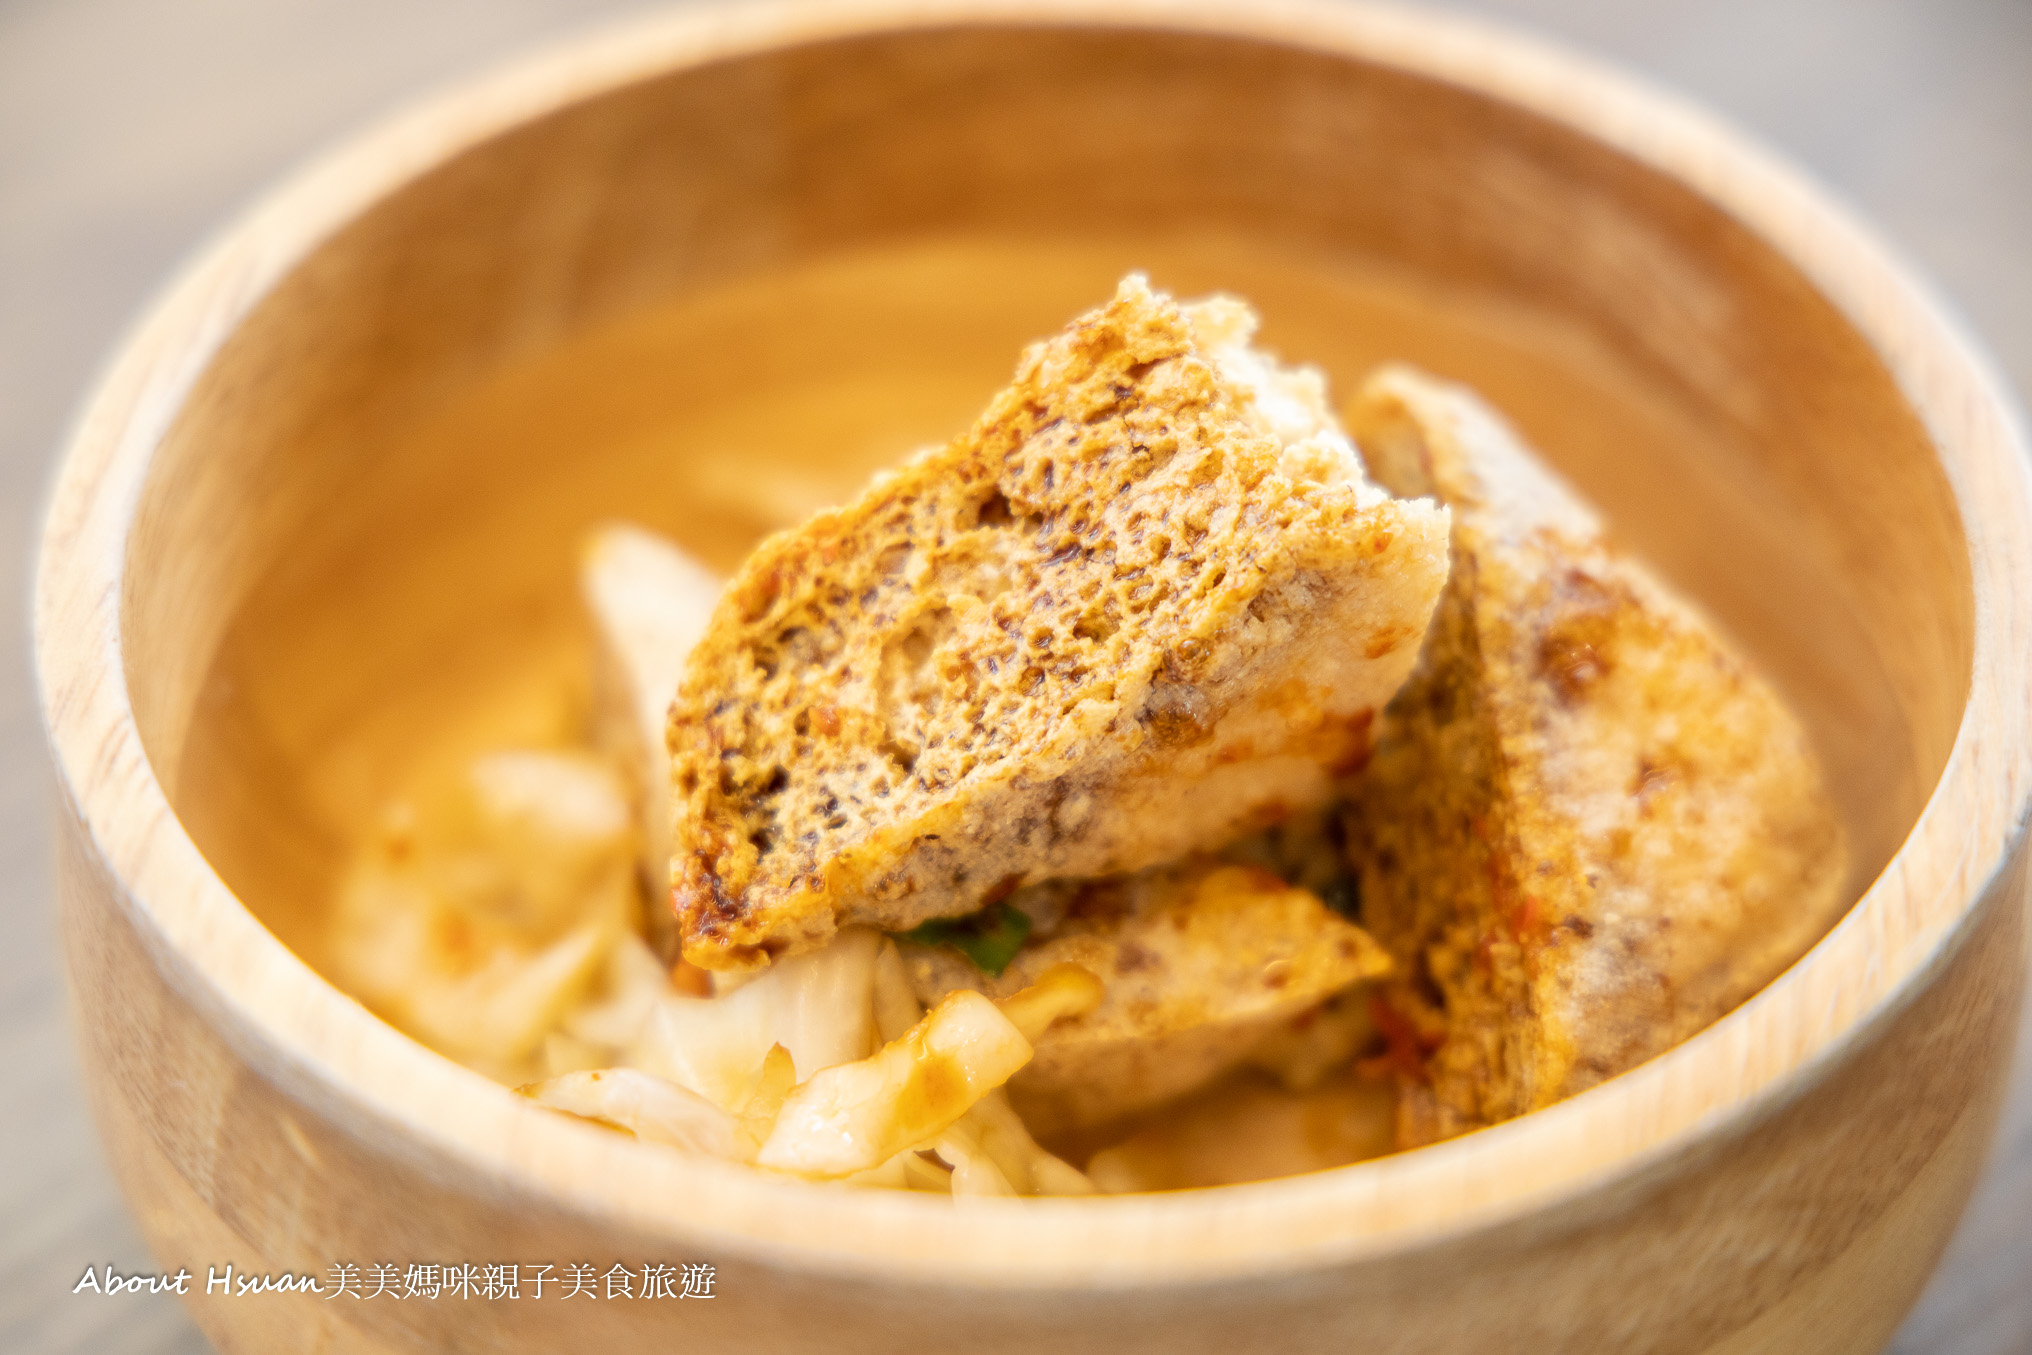 中壢驚嘆號臭豆腐 充滿網美風格的素食臭豆腐 顛覆傳統小吃的印象 @About Hsuan美美媽咪親子美食旅遊